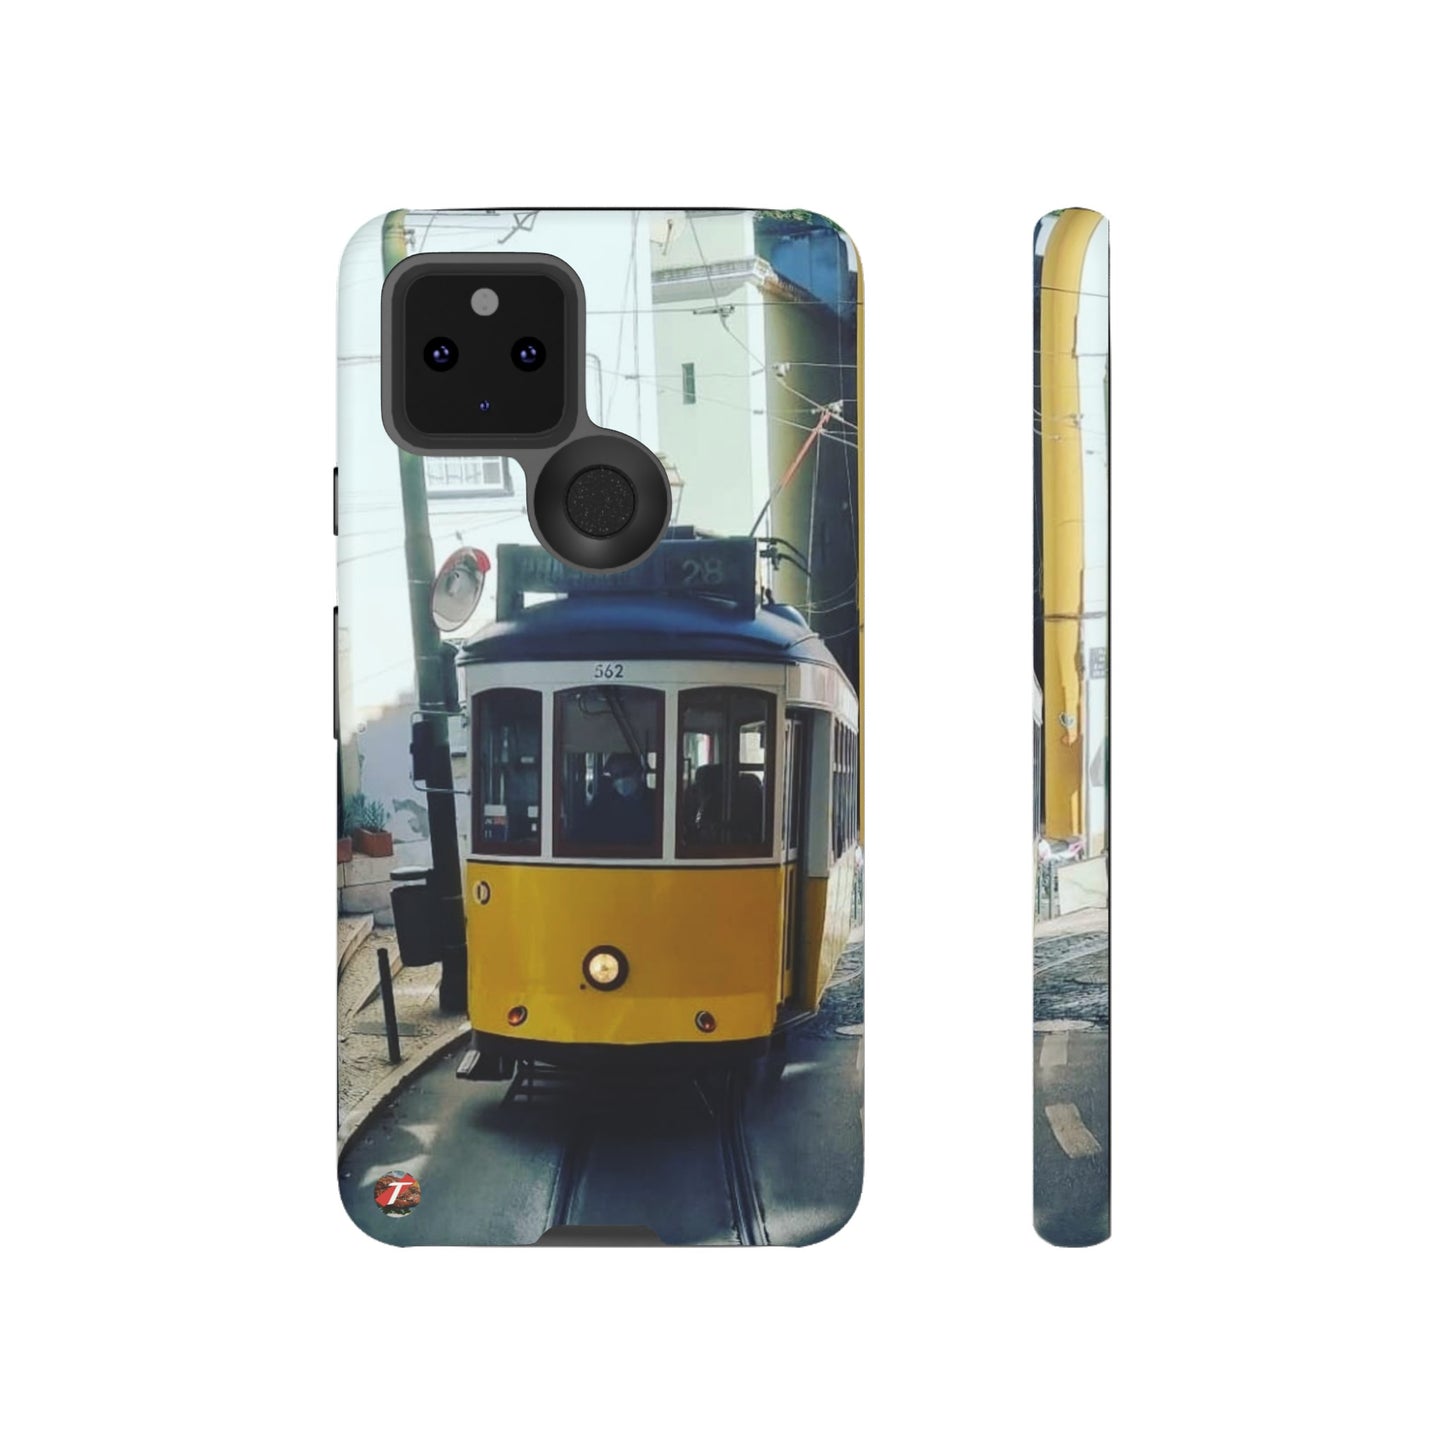 Remodelado Tram | Portugal | Tough Cases